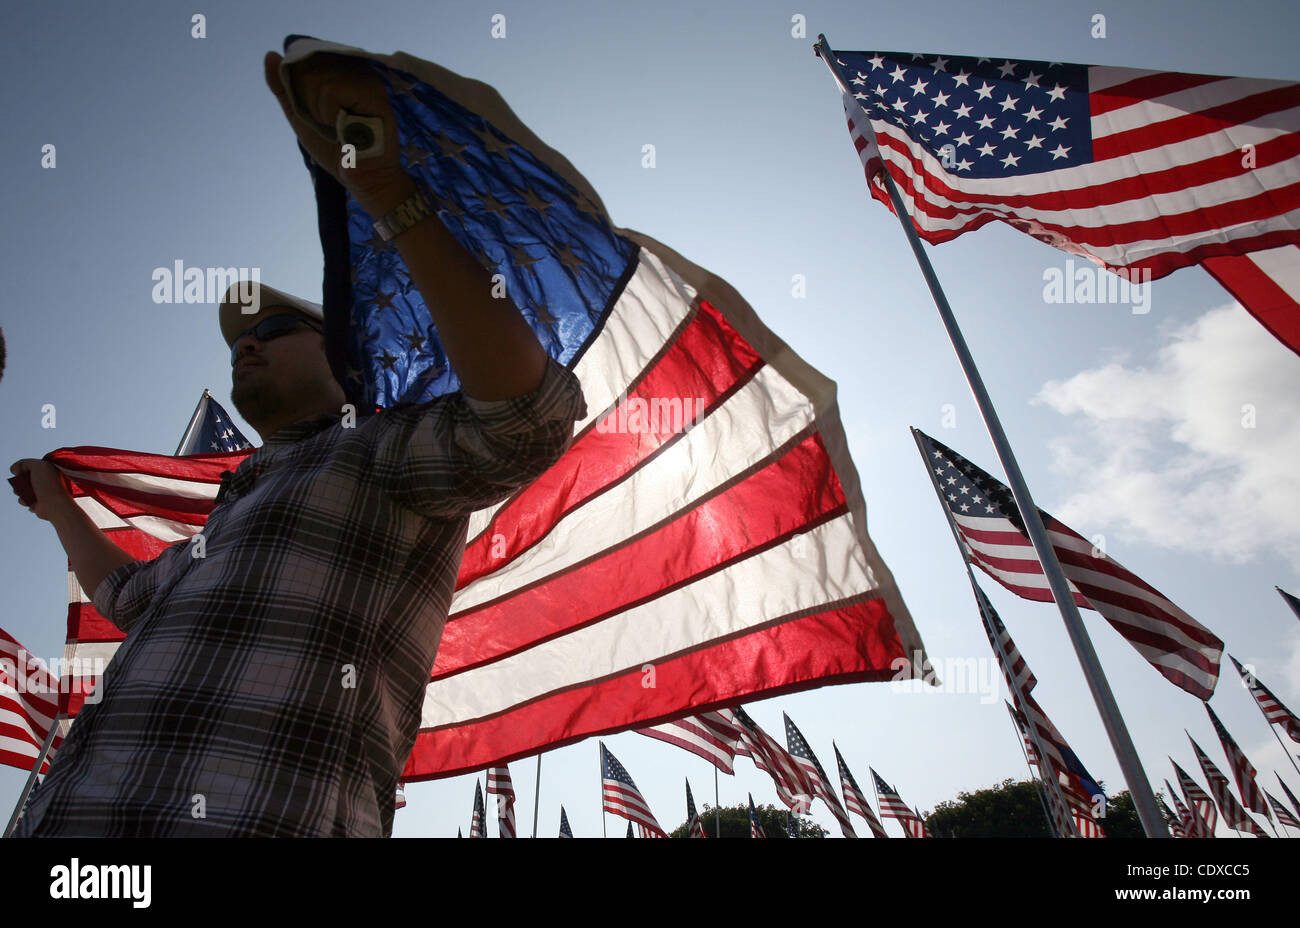 Michael Prince, 38, geht mit einer Fahne unter drei Tausenden von amerikanischen Flaggen an einem Denkmal zu Ehren der Opfer der Terroranschläge 11. September 2001, eingestellt auf Sonntag, 11. September 2011 von Freiwilligen auf dem Campus Rasen der Pepperdine University in Malibu, Kalifornien. (Foto von Ringo Chiu / Zuma Press) Stockfoto